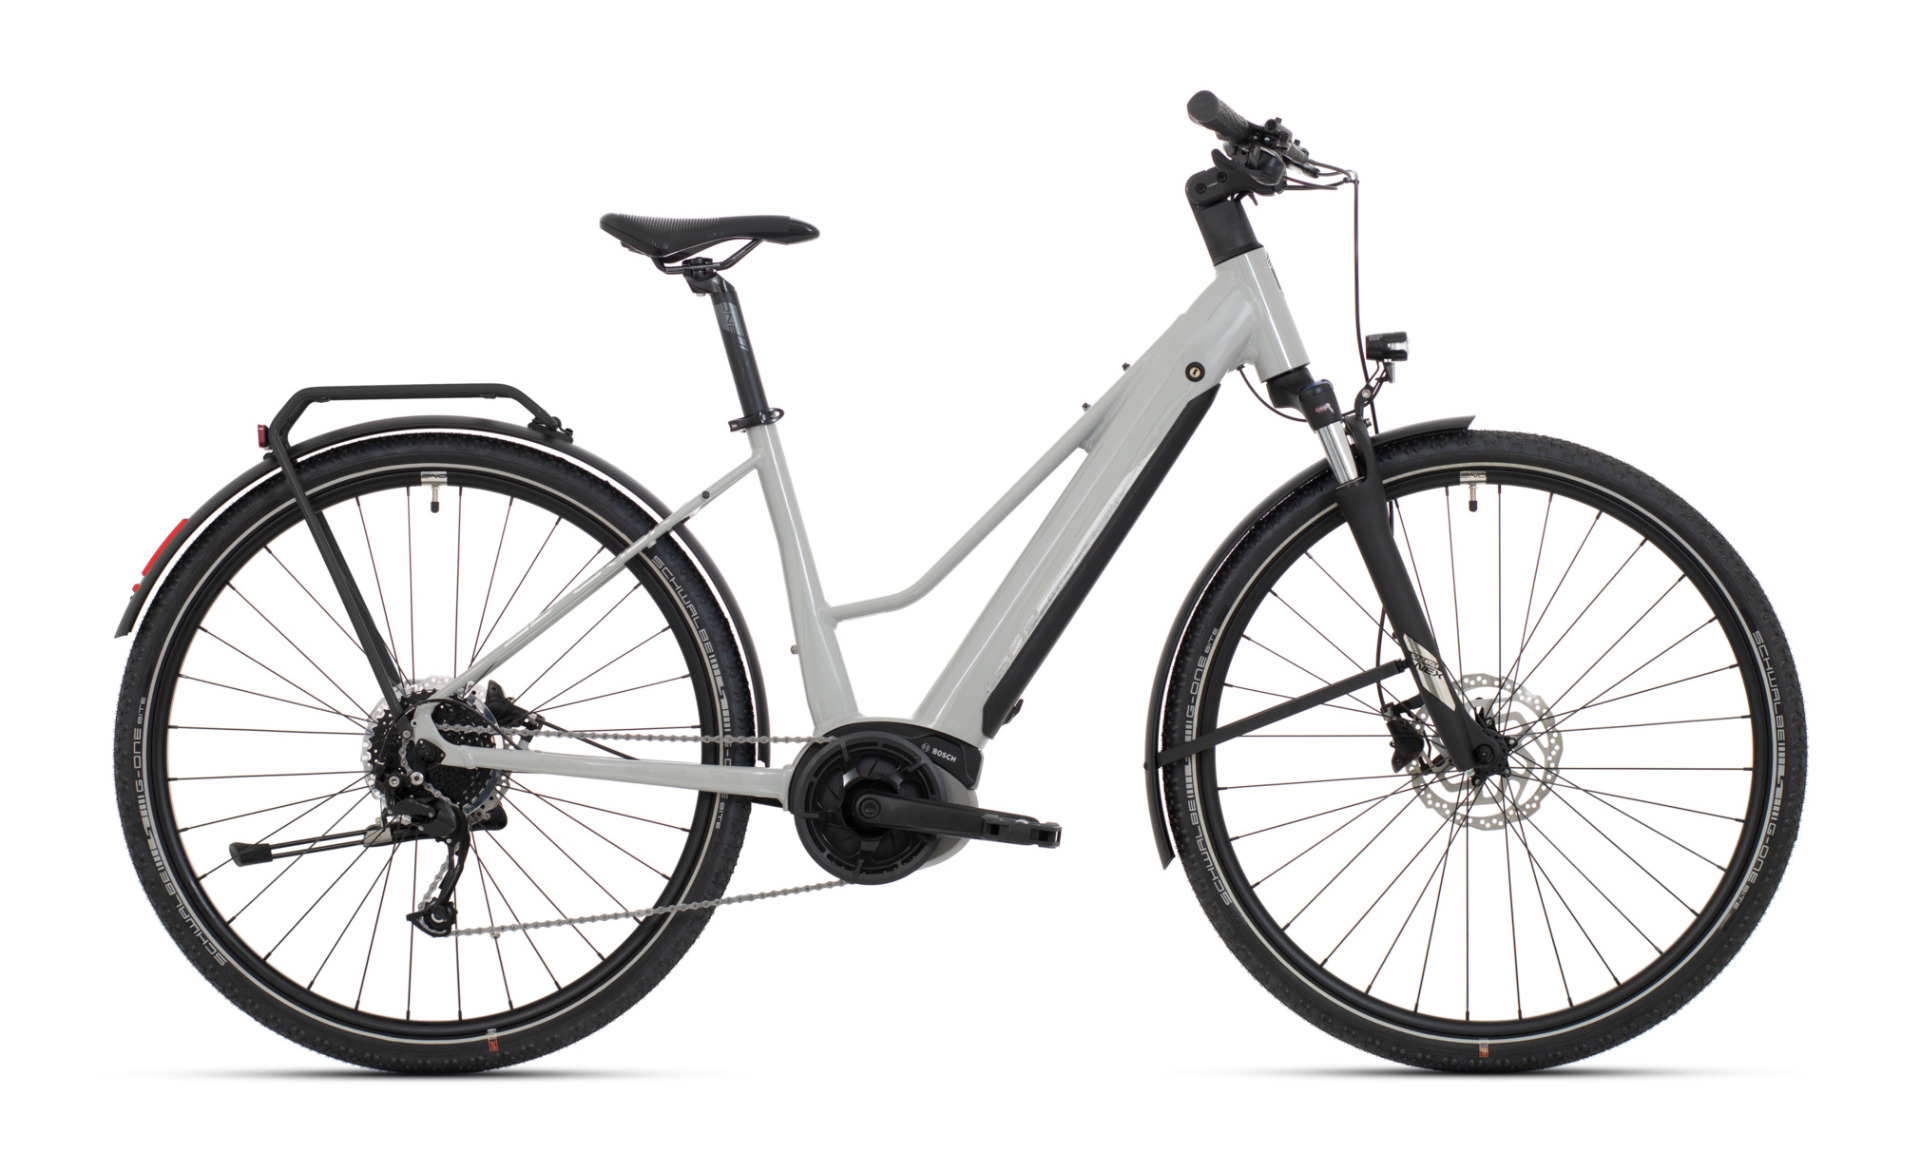 Jalgratas Superior eXR 6050 BL Touring 700C Gloss Gray/Chrome Silver